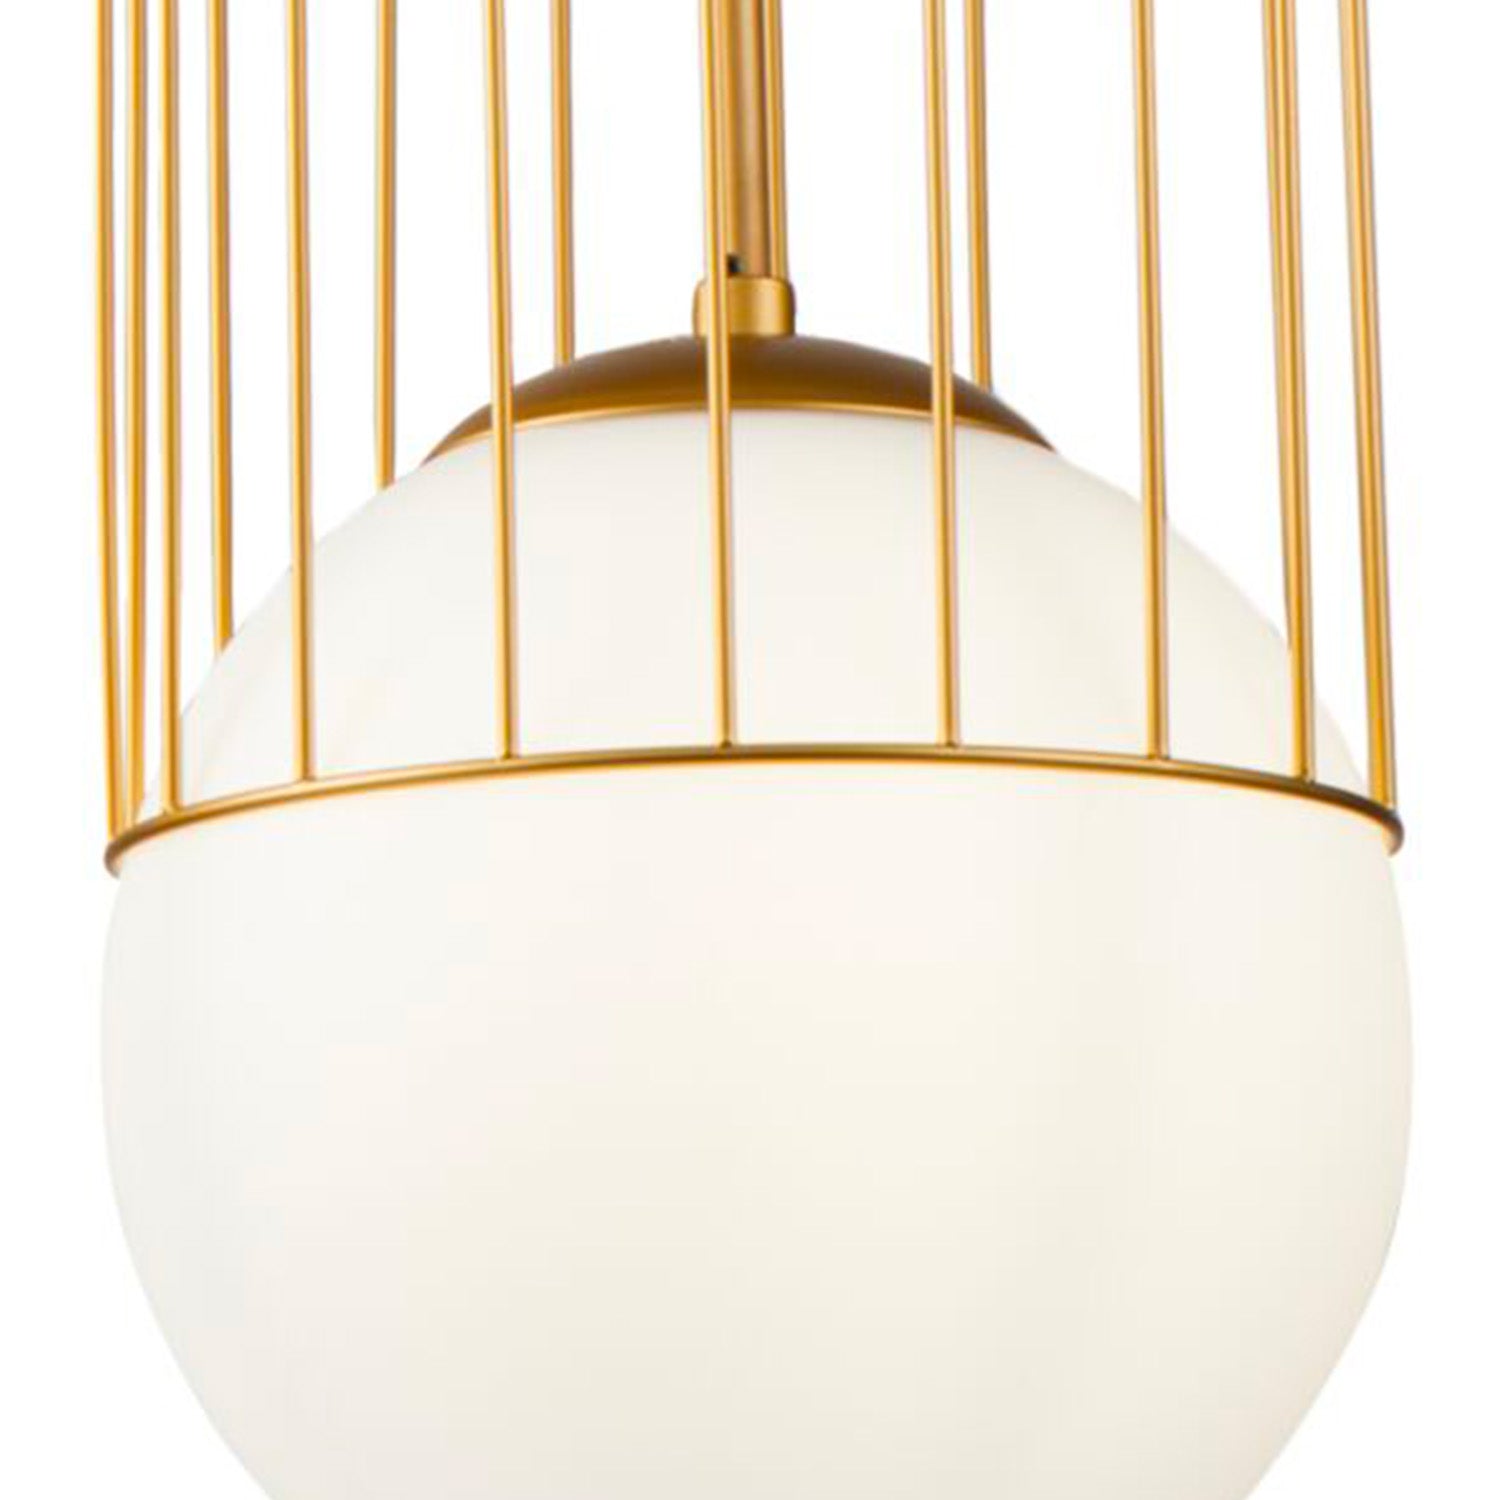 TELFORD - Suspension cage doré avec boule en verre blanc